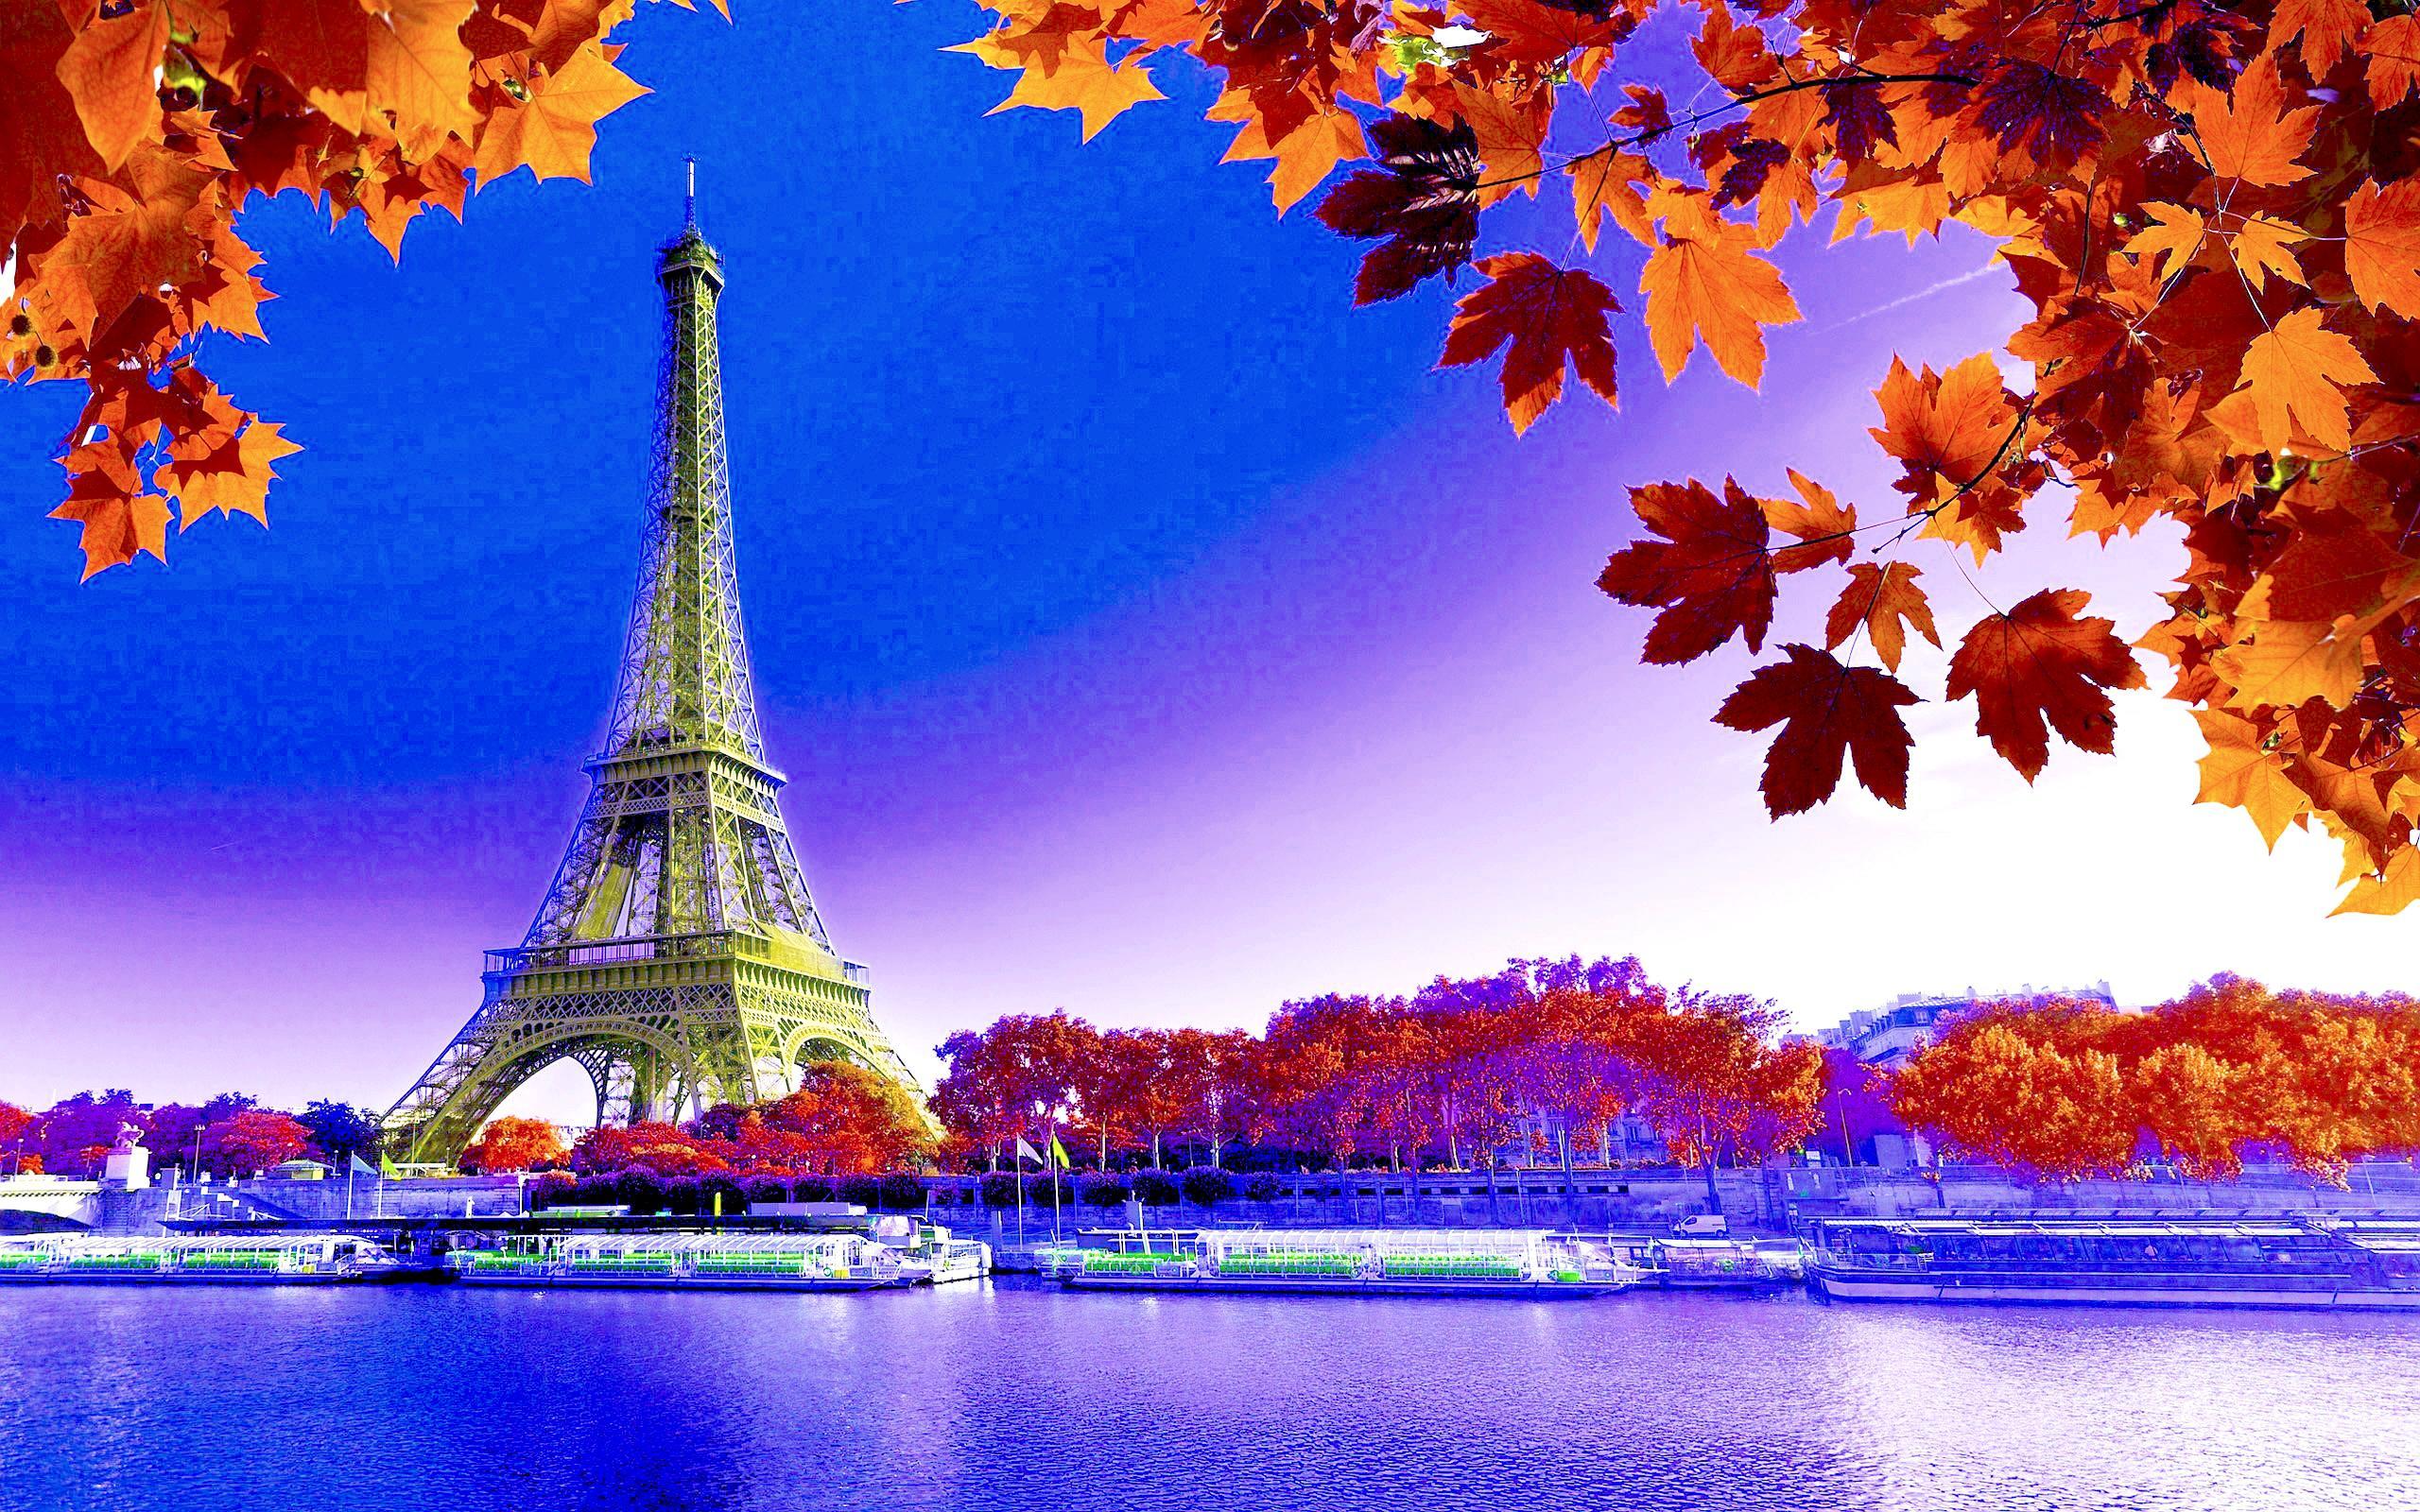 2560 x 1600 · jpeg - HD Eiffel Tower Wallpaper | PixelsTalk